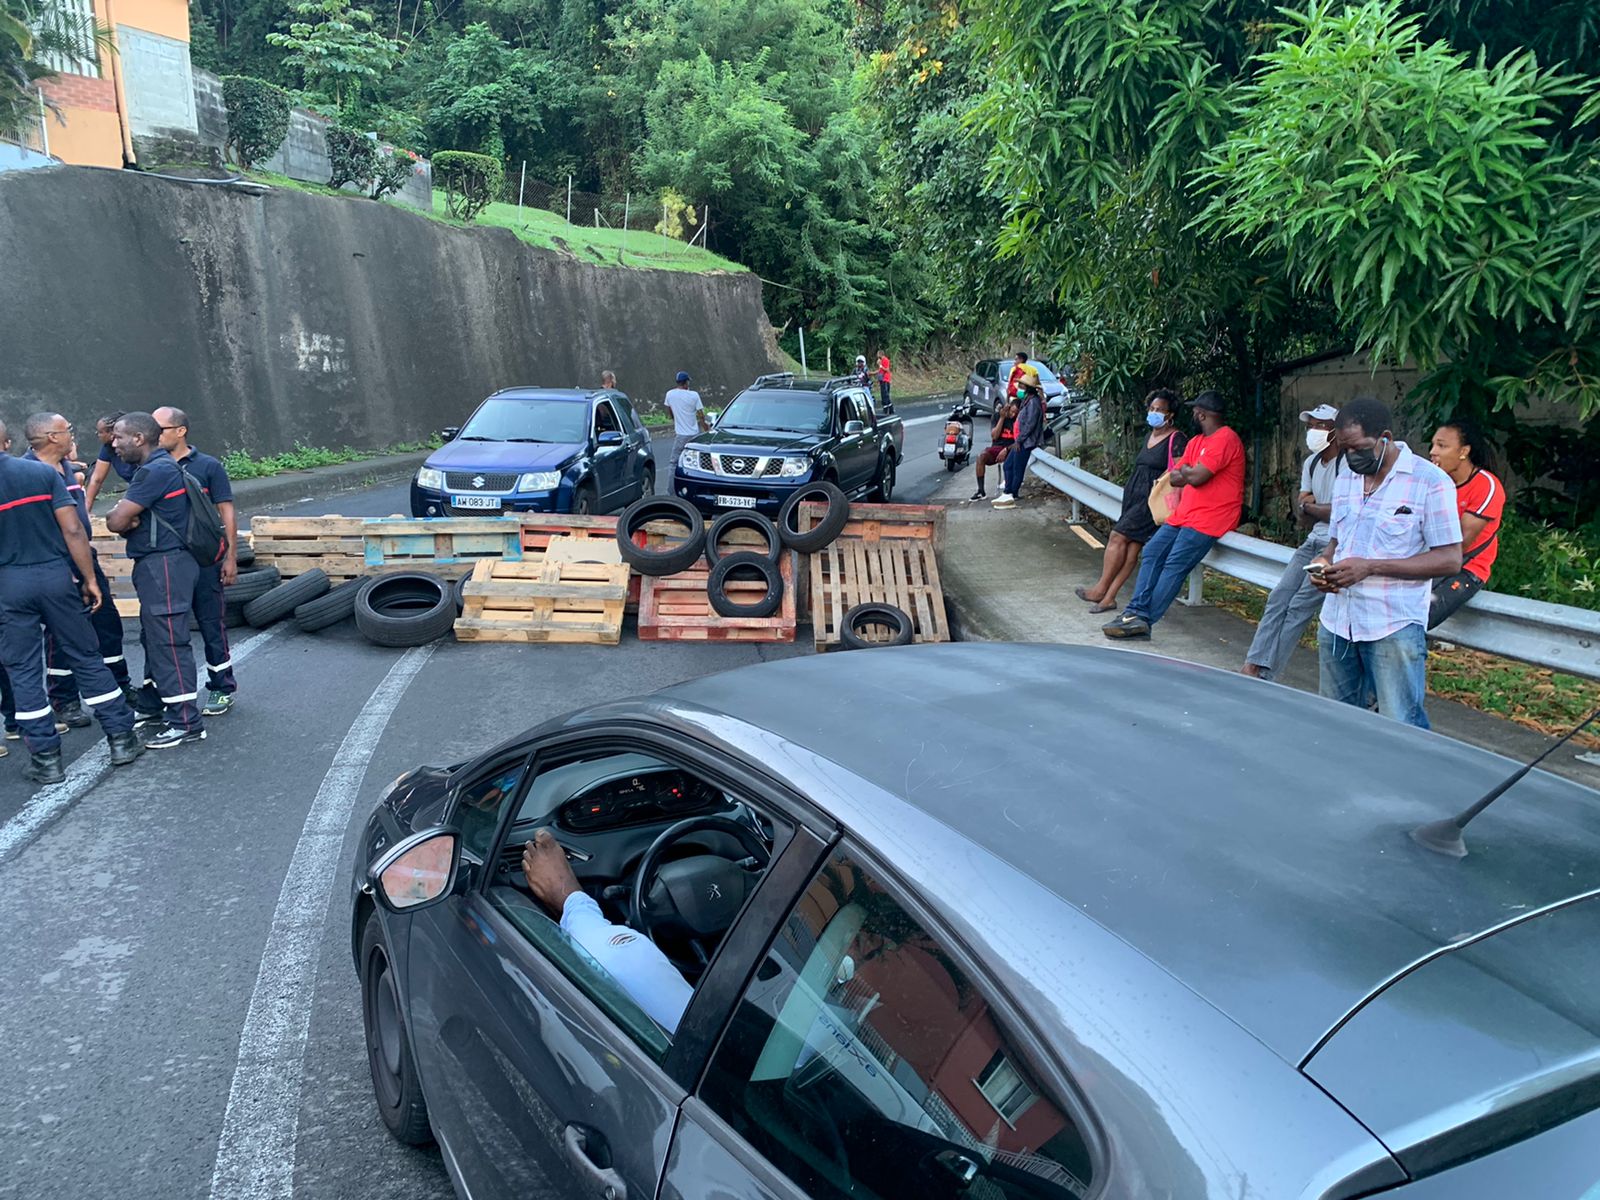     La Martinique paralysée par des barrages routiers

